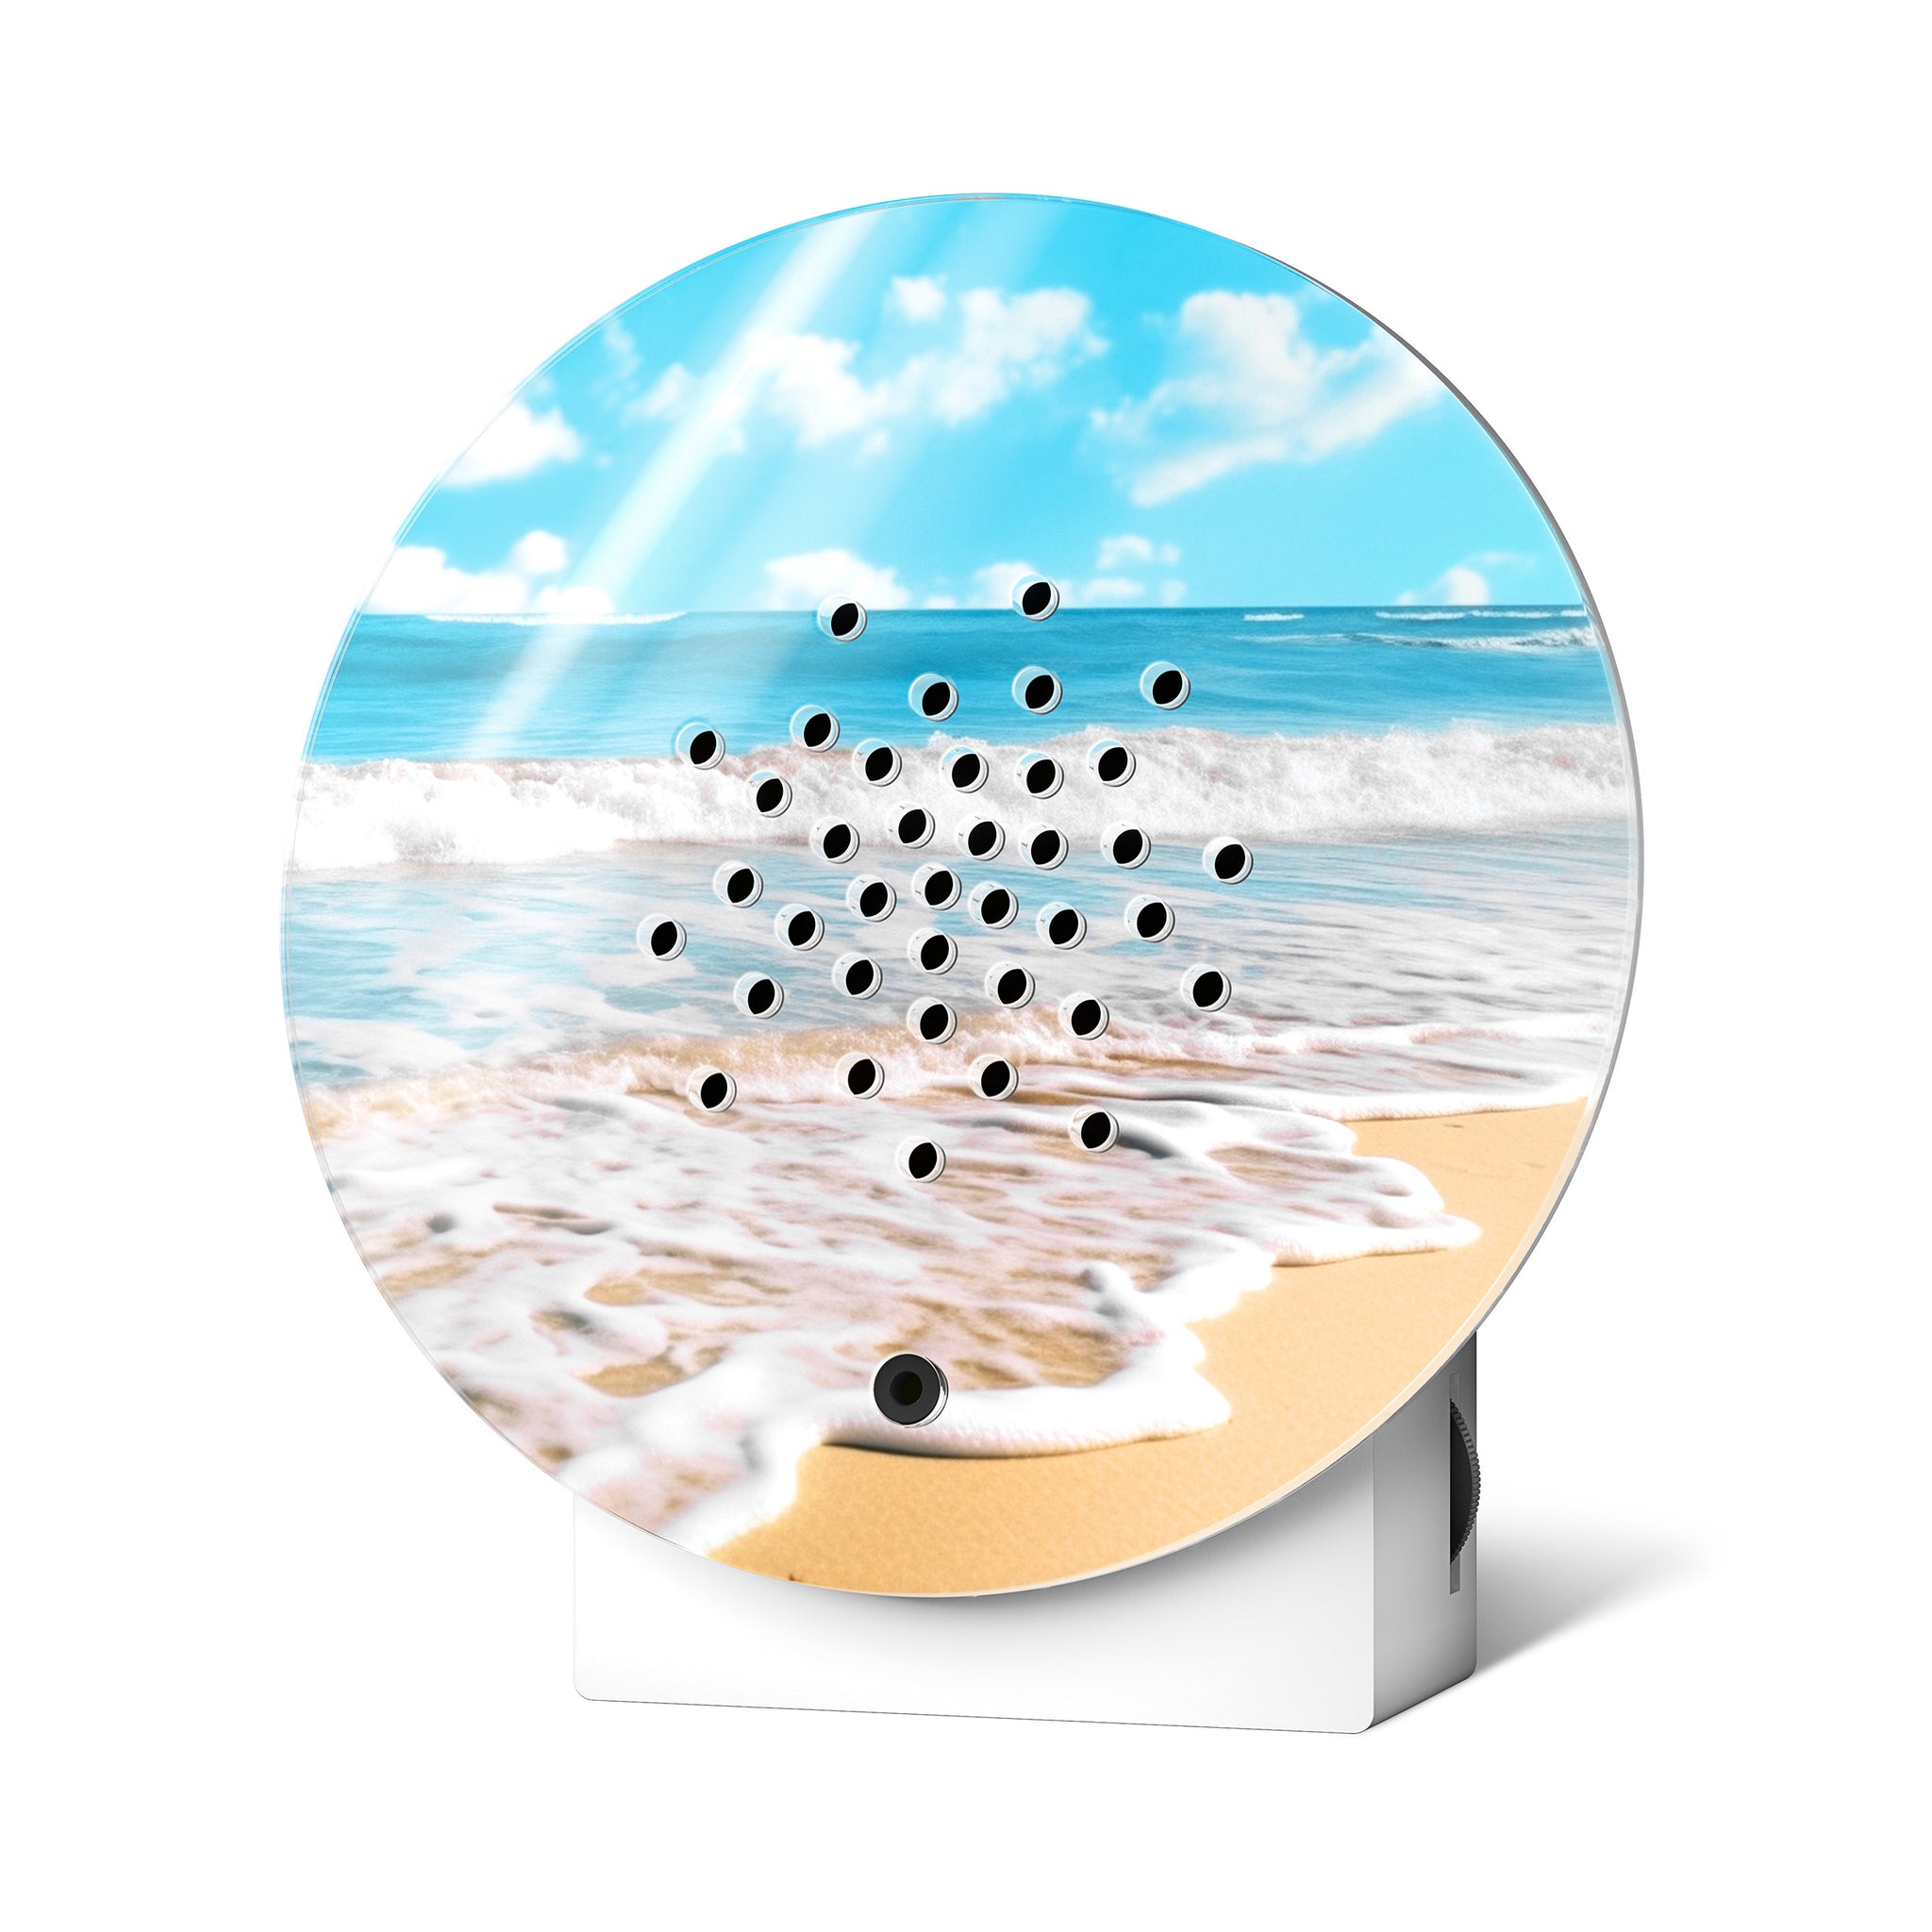 Relaxound Oceanbox Surf│Zeegeluiden│art. 11OBX0701001│voorkant met witte achtergrond